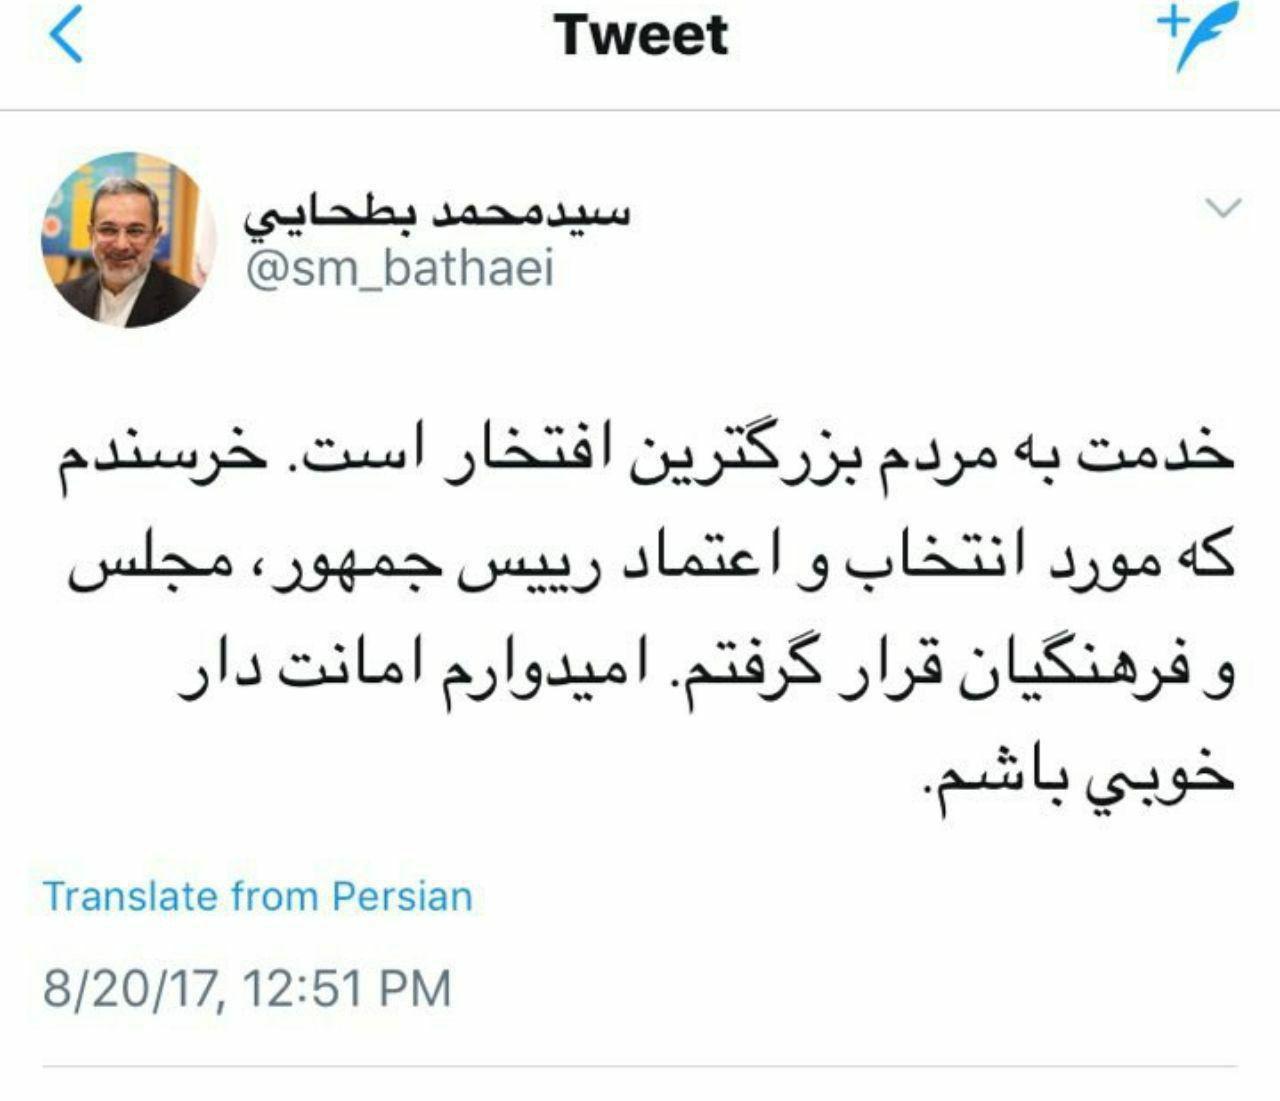 اولین توییت بطحایی به عنوان وزیر آموزش و پرورش دولت دوازدهم (عکس)